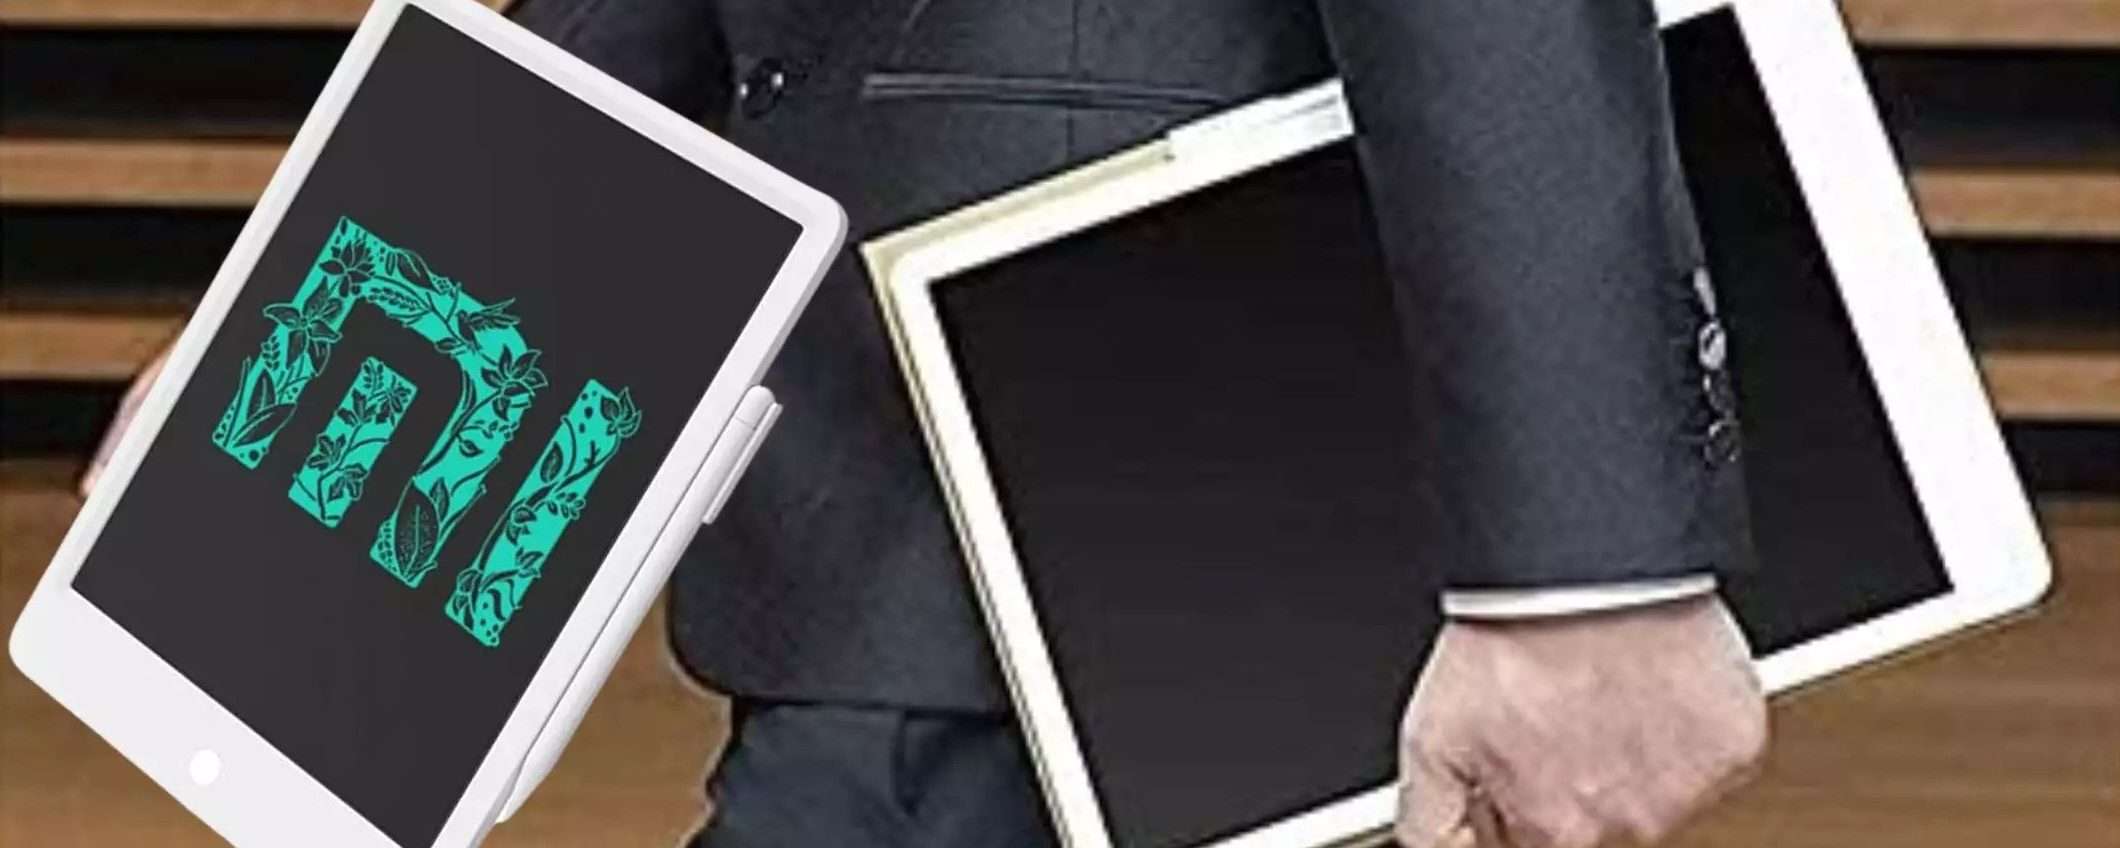 Xiaomi: il tablet LCD da scrittura CROLLA di prezzo su Amazon, FOLLIA (18€)